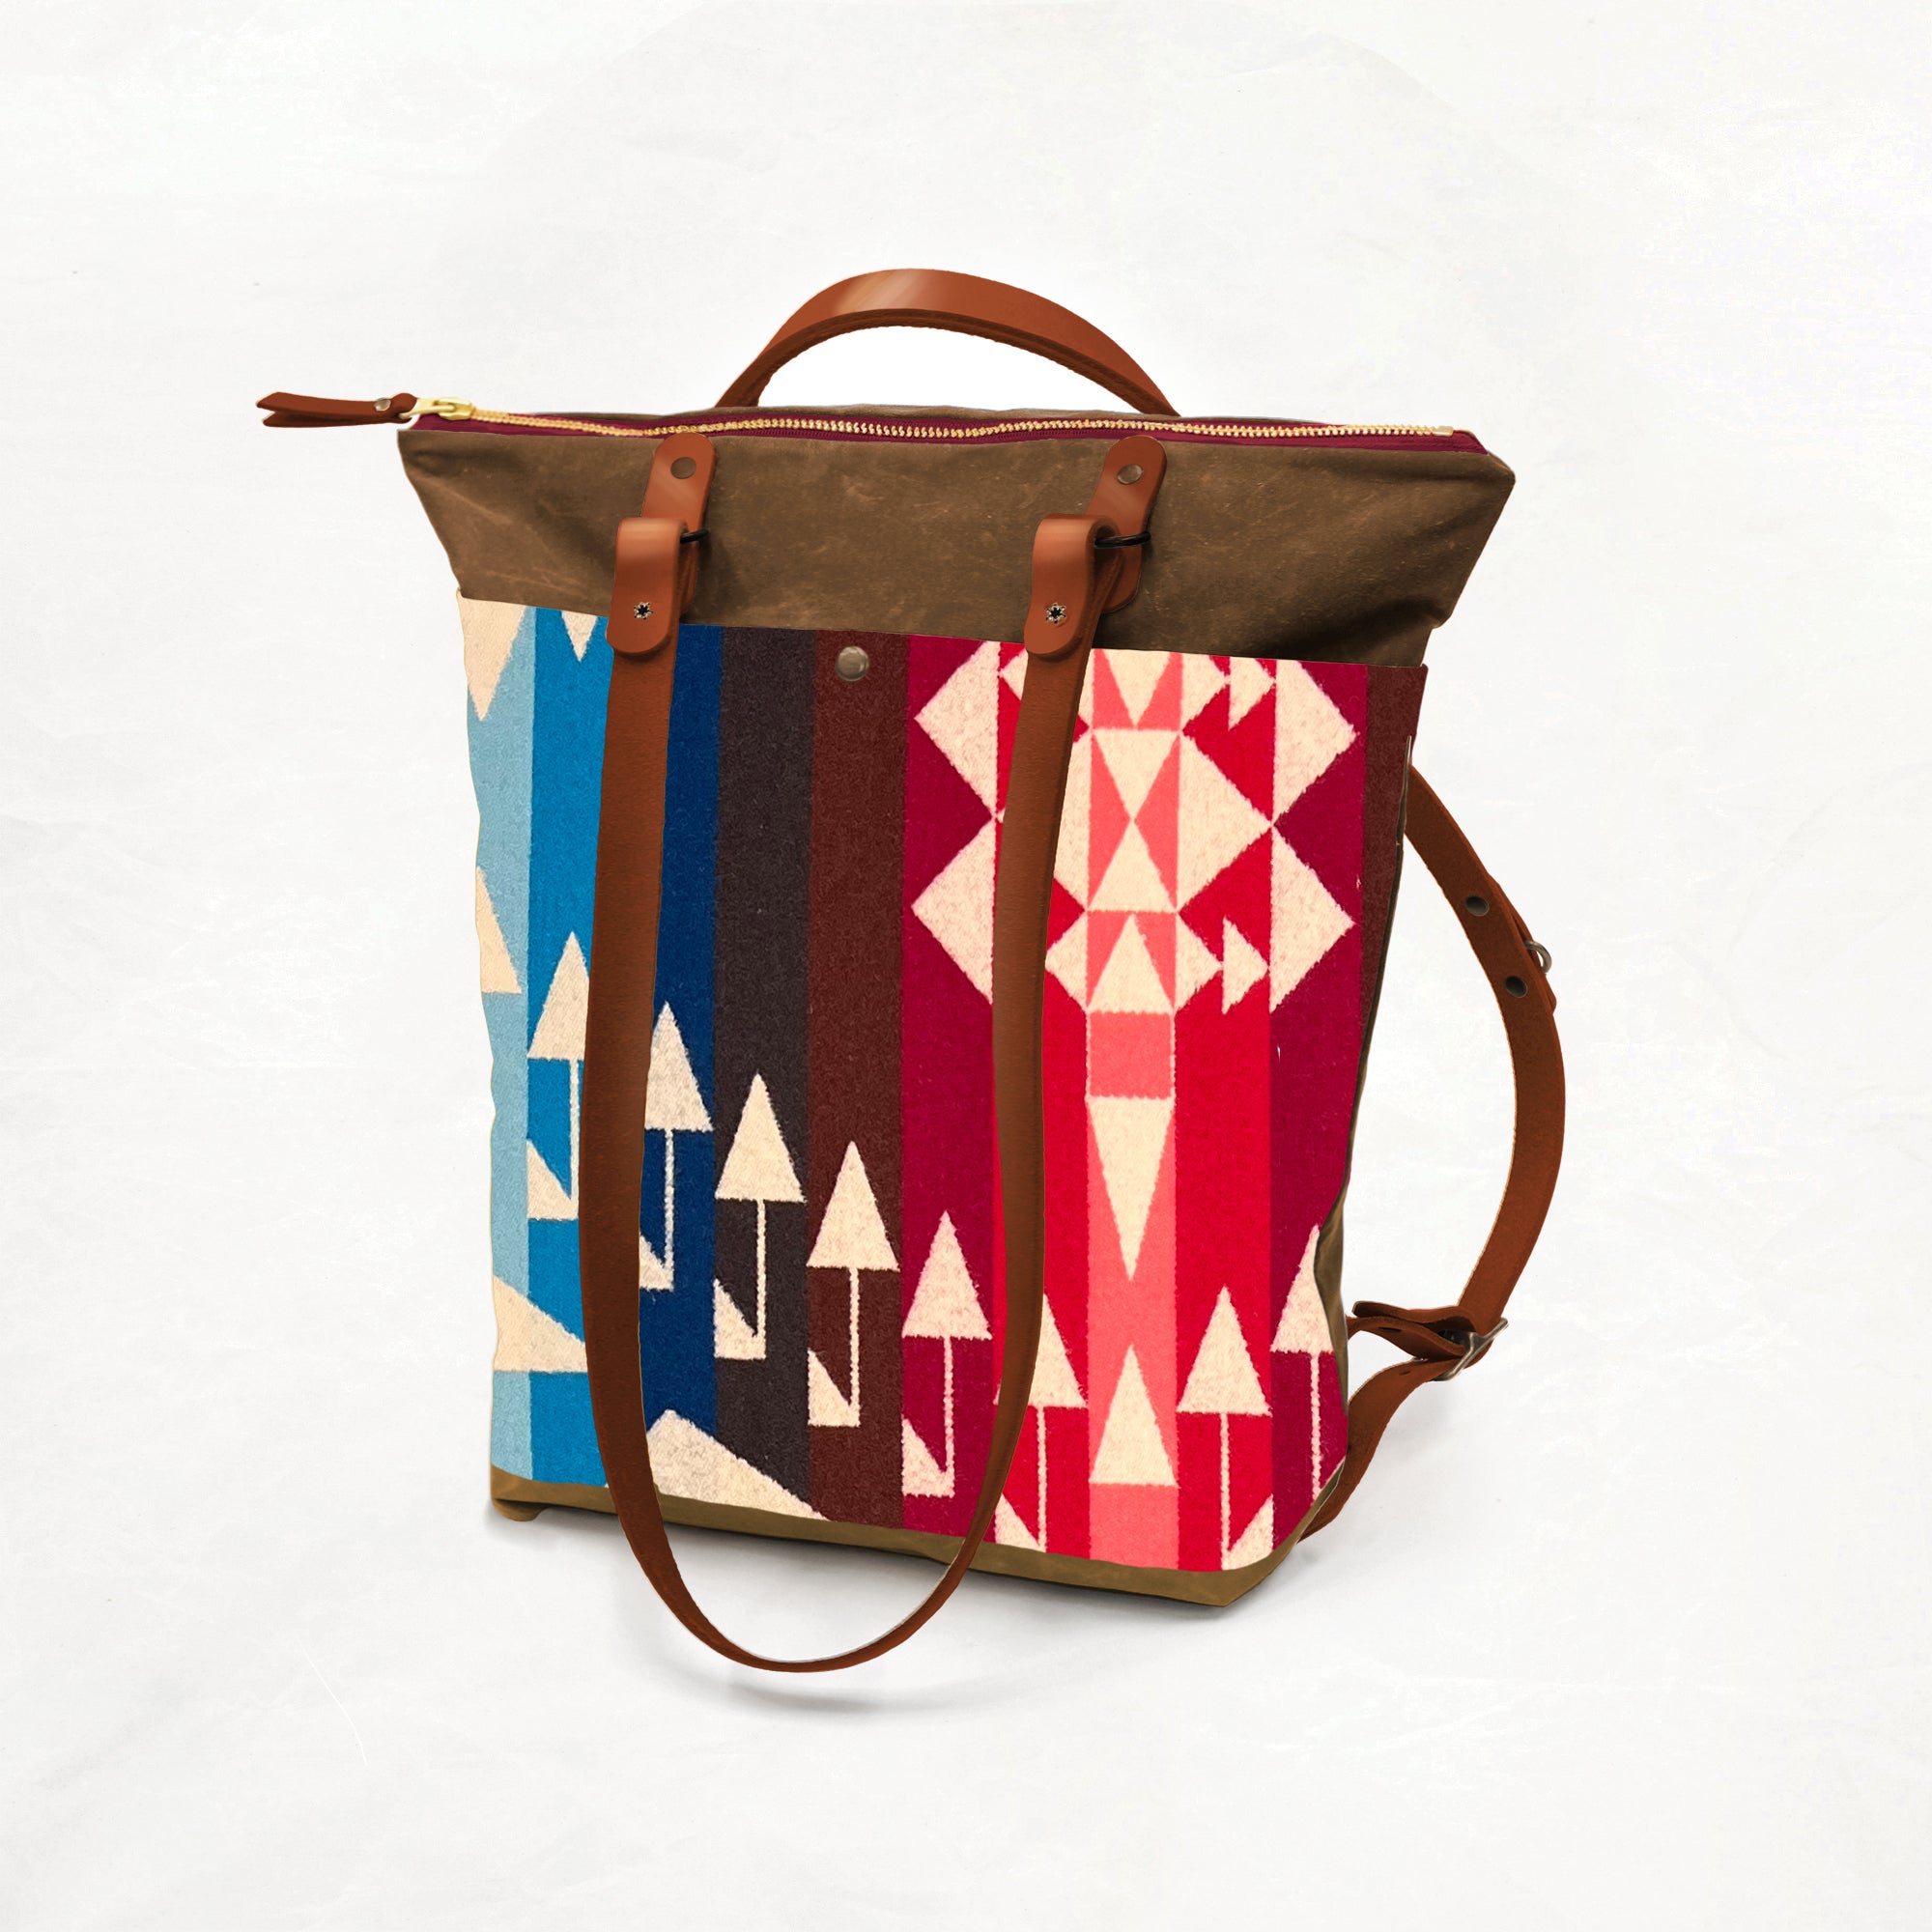 Waxed Canvas Zipper Pouch Kits - Grab Bag! - Klum House